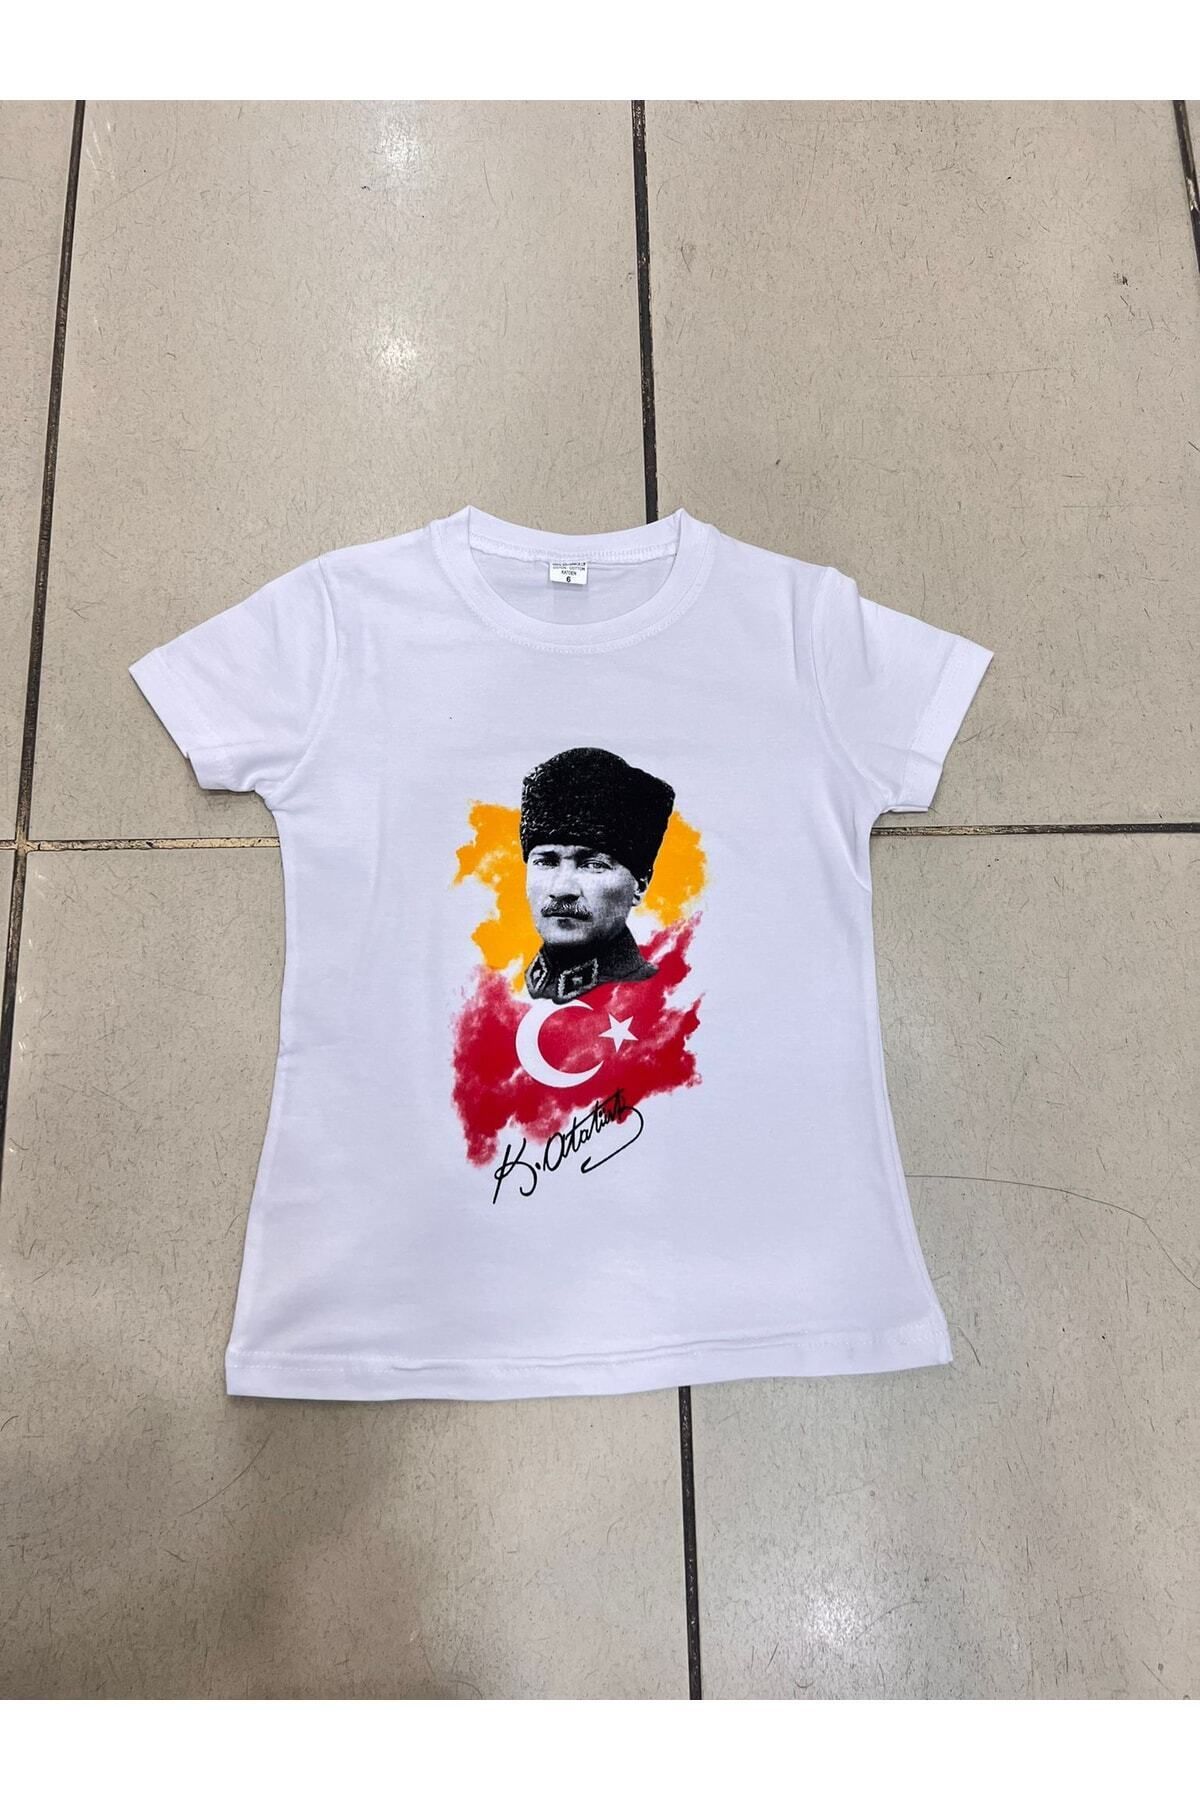 Nacar 23 Nisan Türk Bayrak Motifli Çocuk Gösteri Kıyafeti Tshirt Unisex 0-24